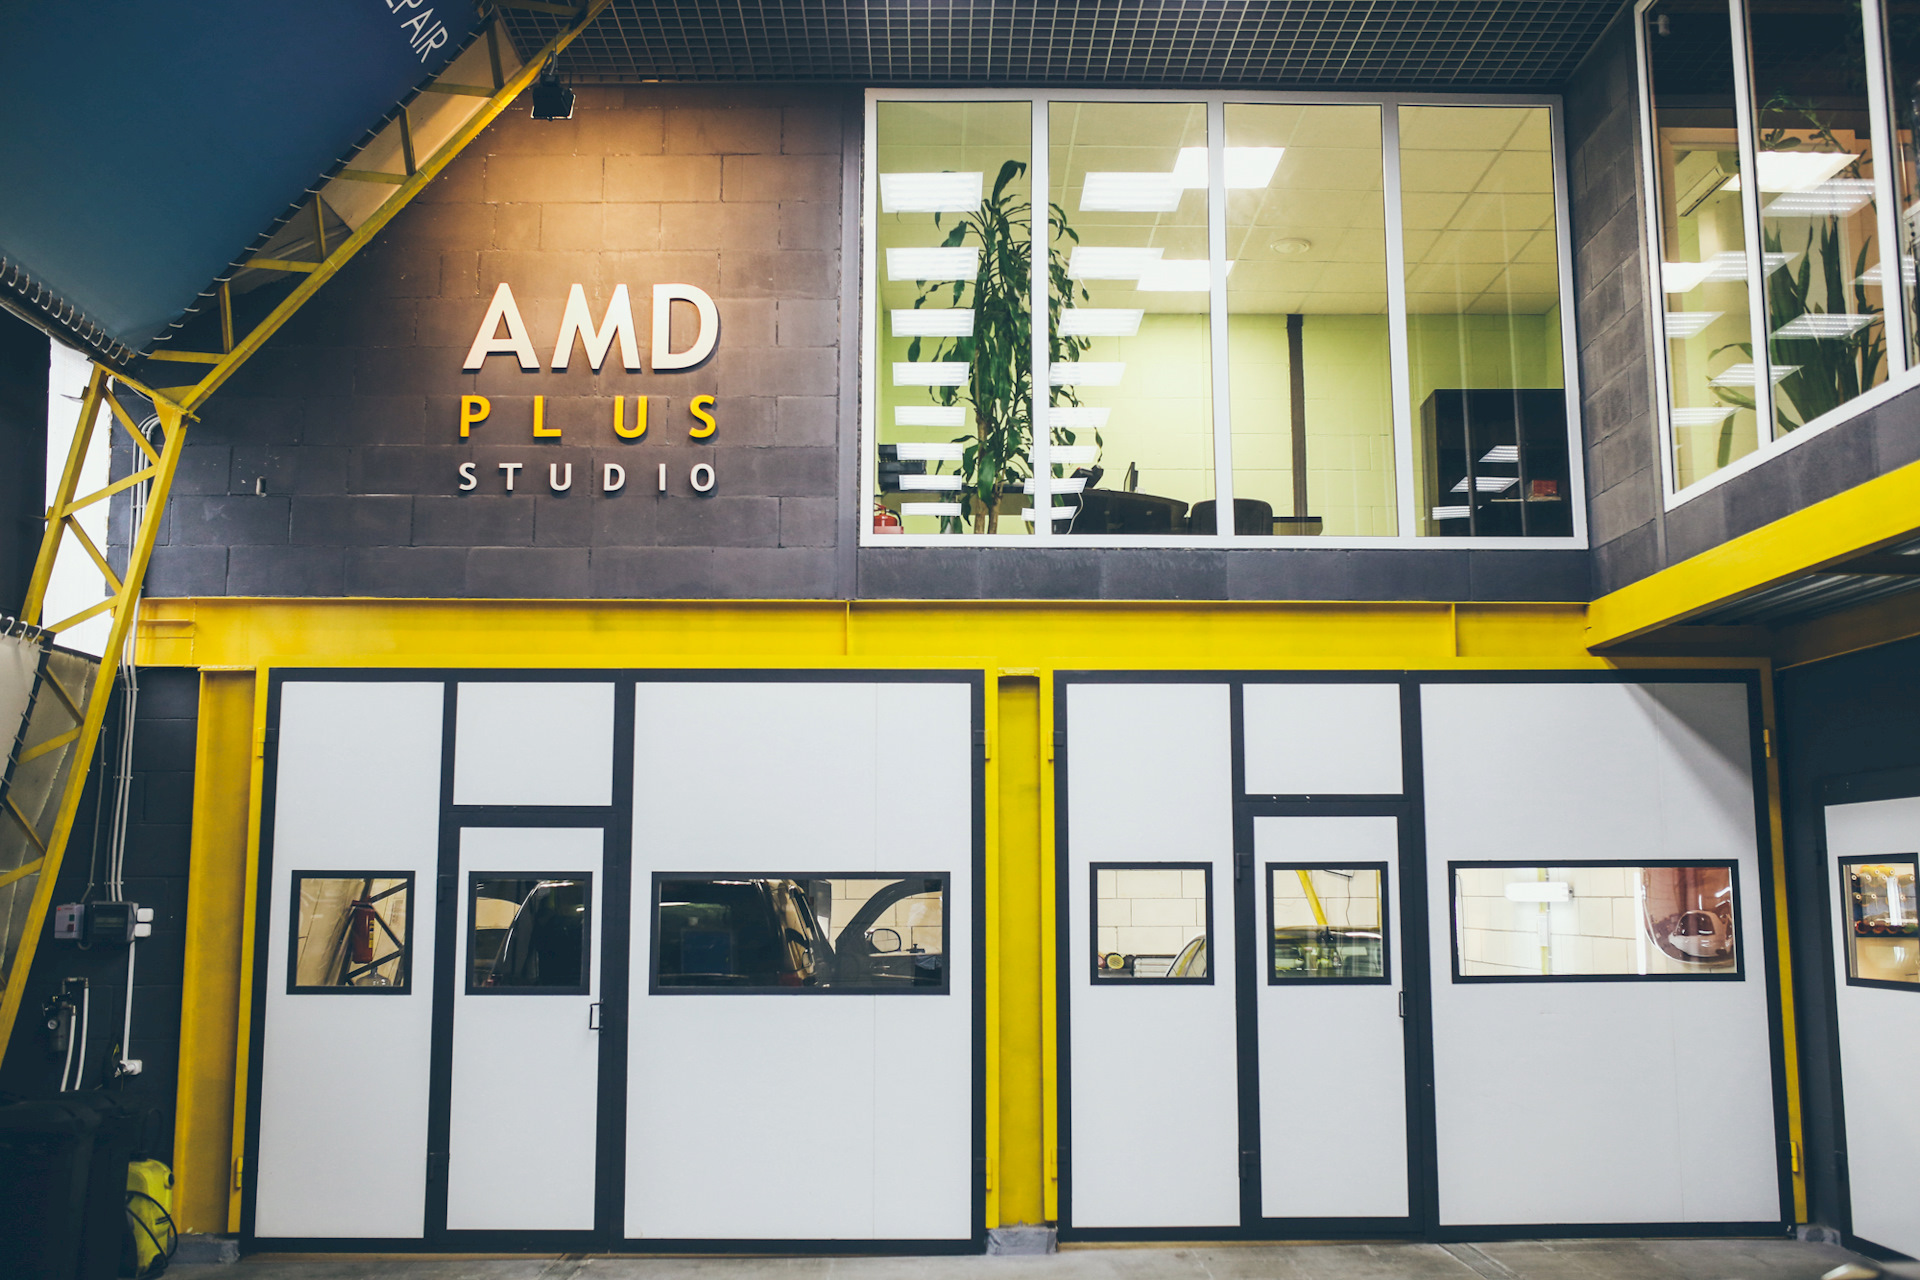 Amd service. AMD Plus Studio. АМД детейлинг Сыктывкар. АМД плюс. АМД покрытия.